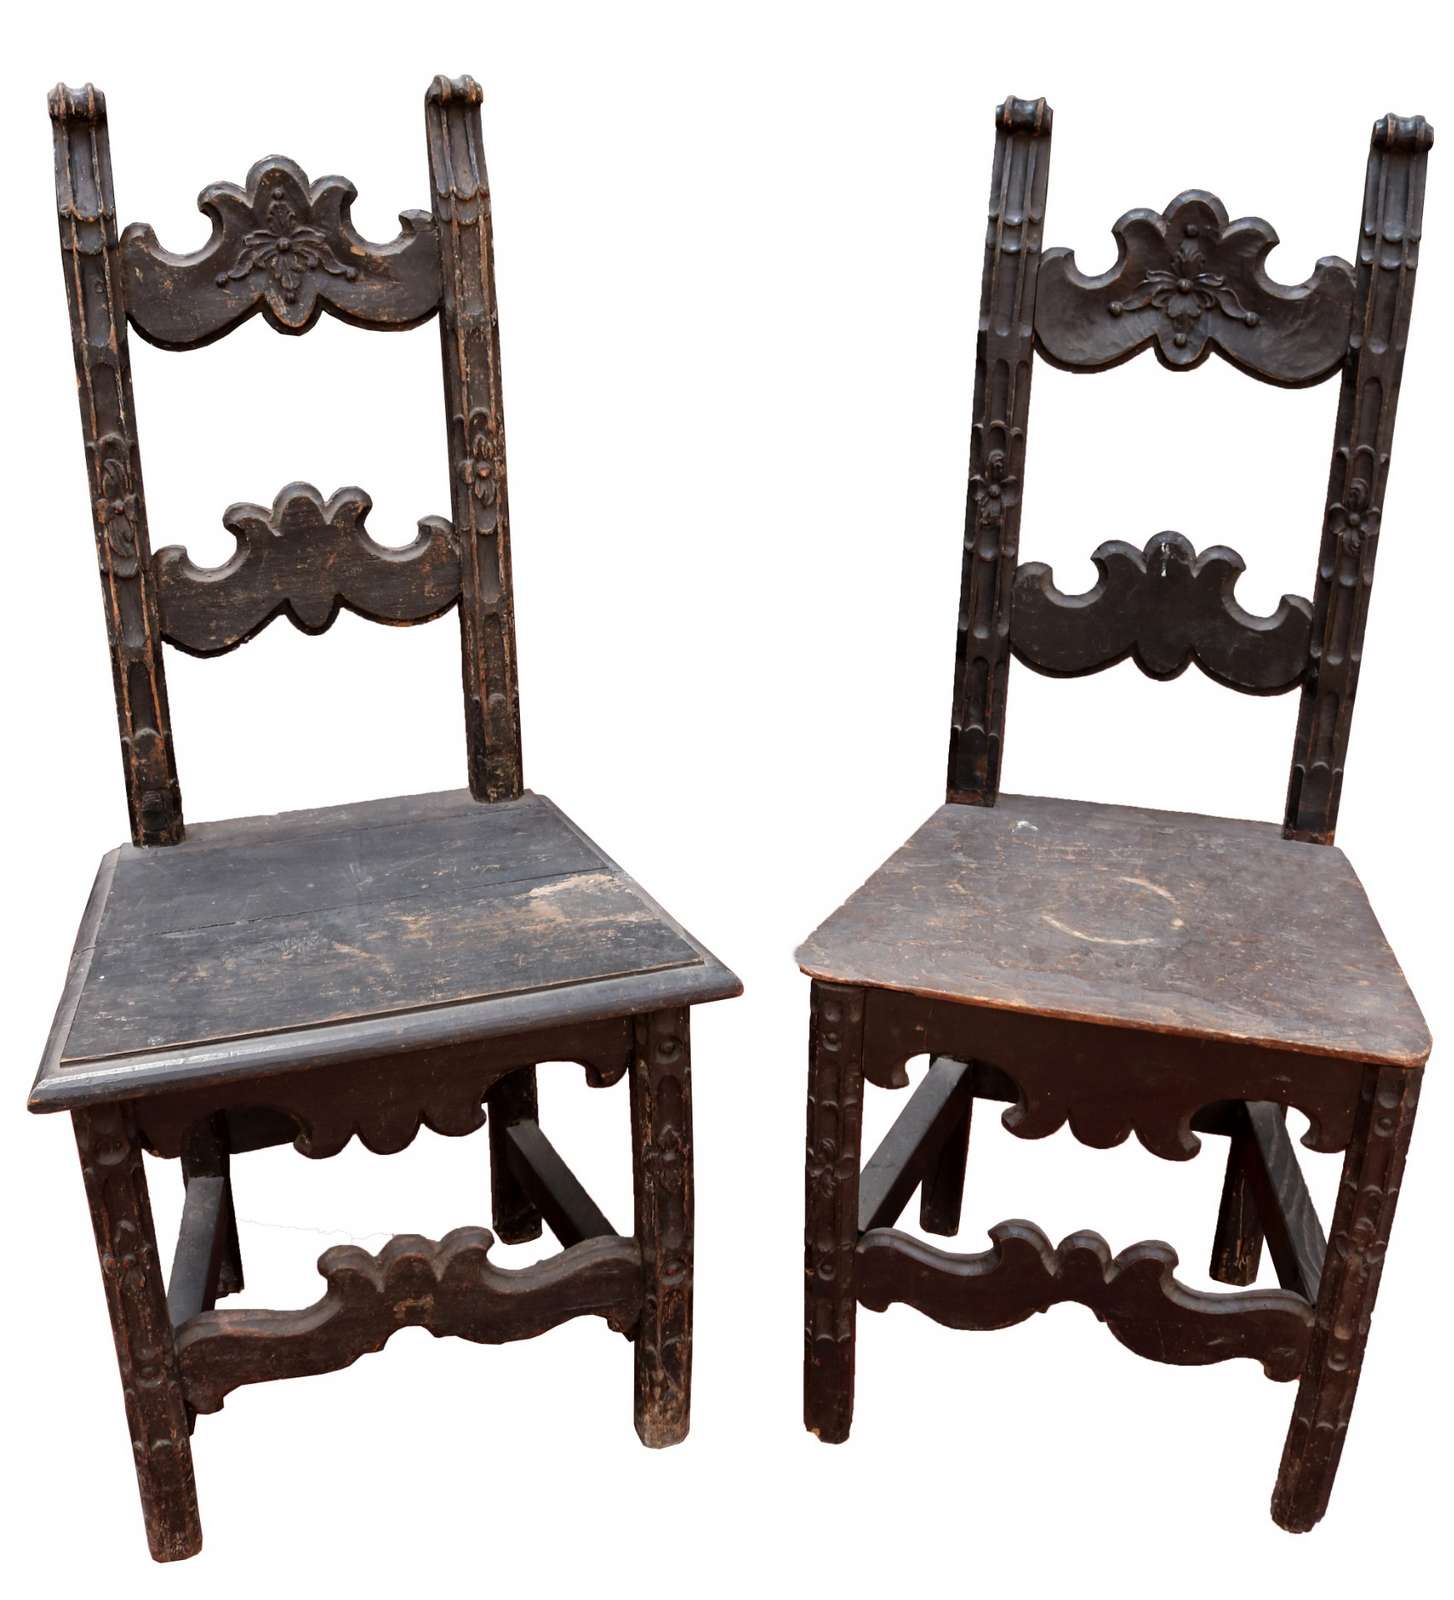 Coppia di antiche sedie in legno. Epoca 1600. - Salotti e Sedie - Mobili antichi - Prodotti - Antichità Fiorillo